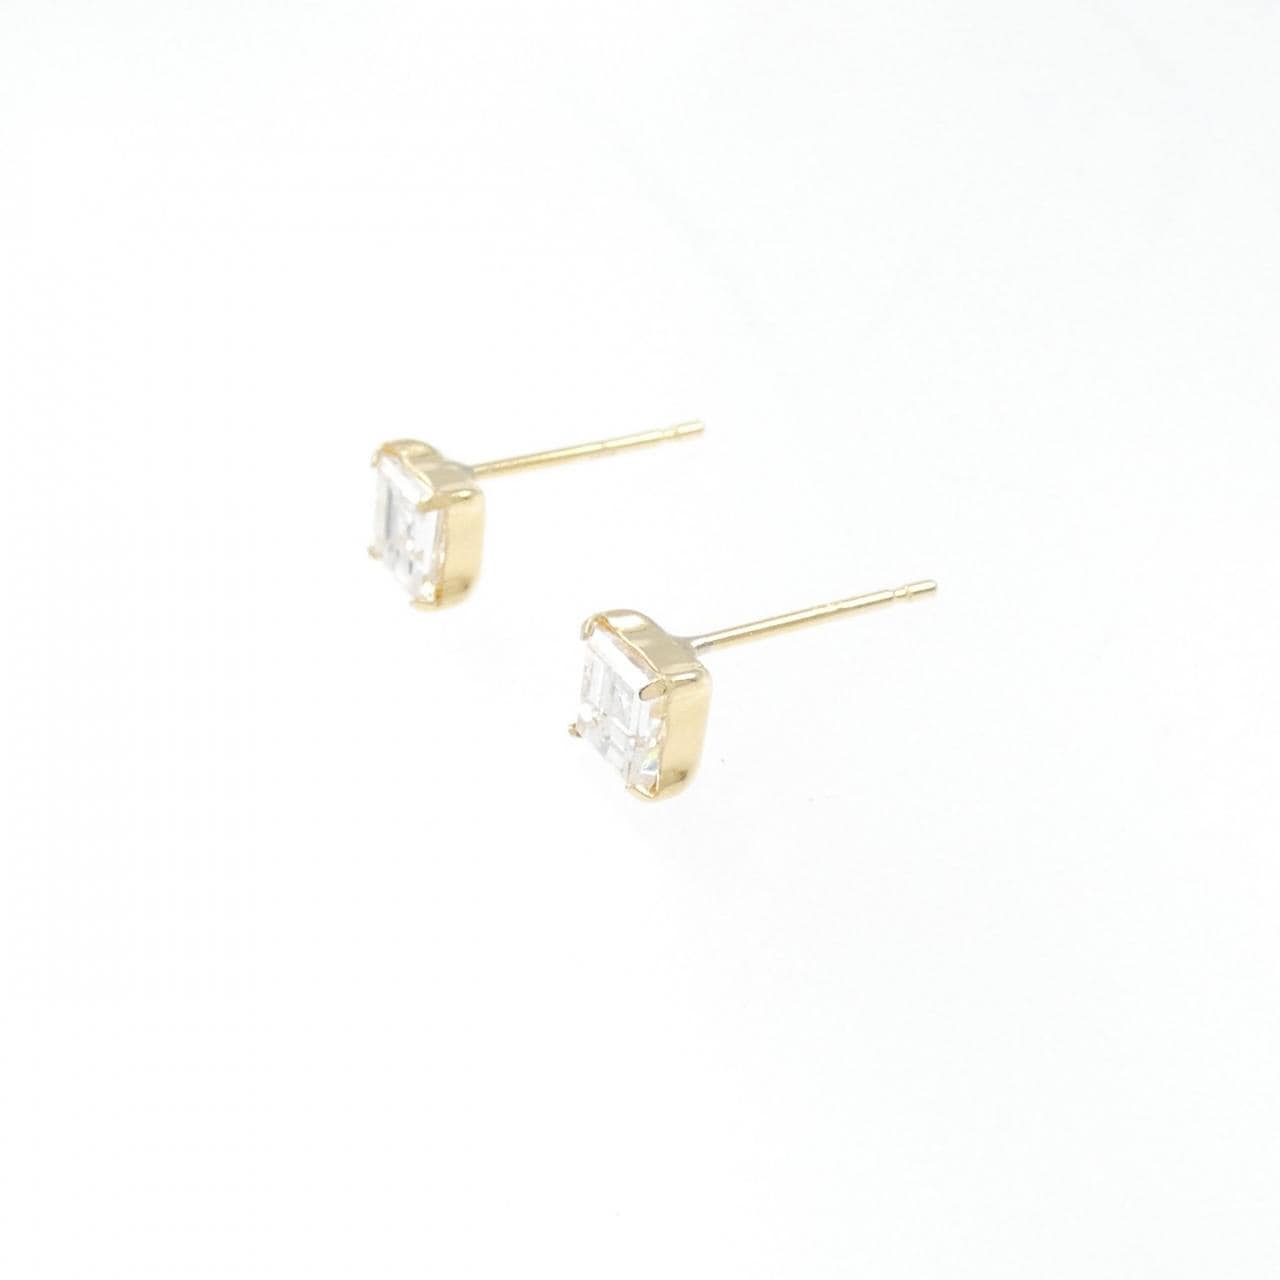 K18YG Diamond Earrings 0.360CT 0.391CT GH SI1 Fancy Cut